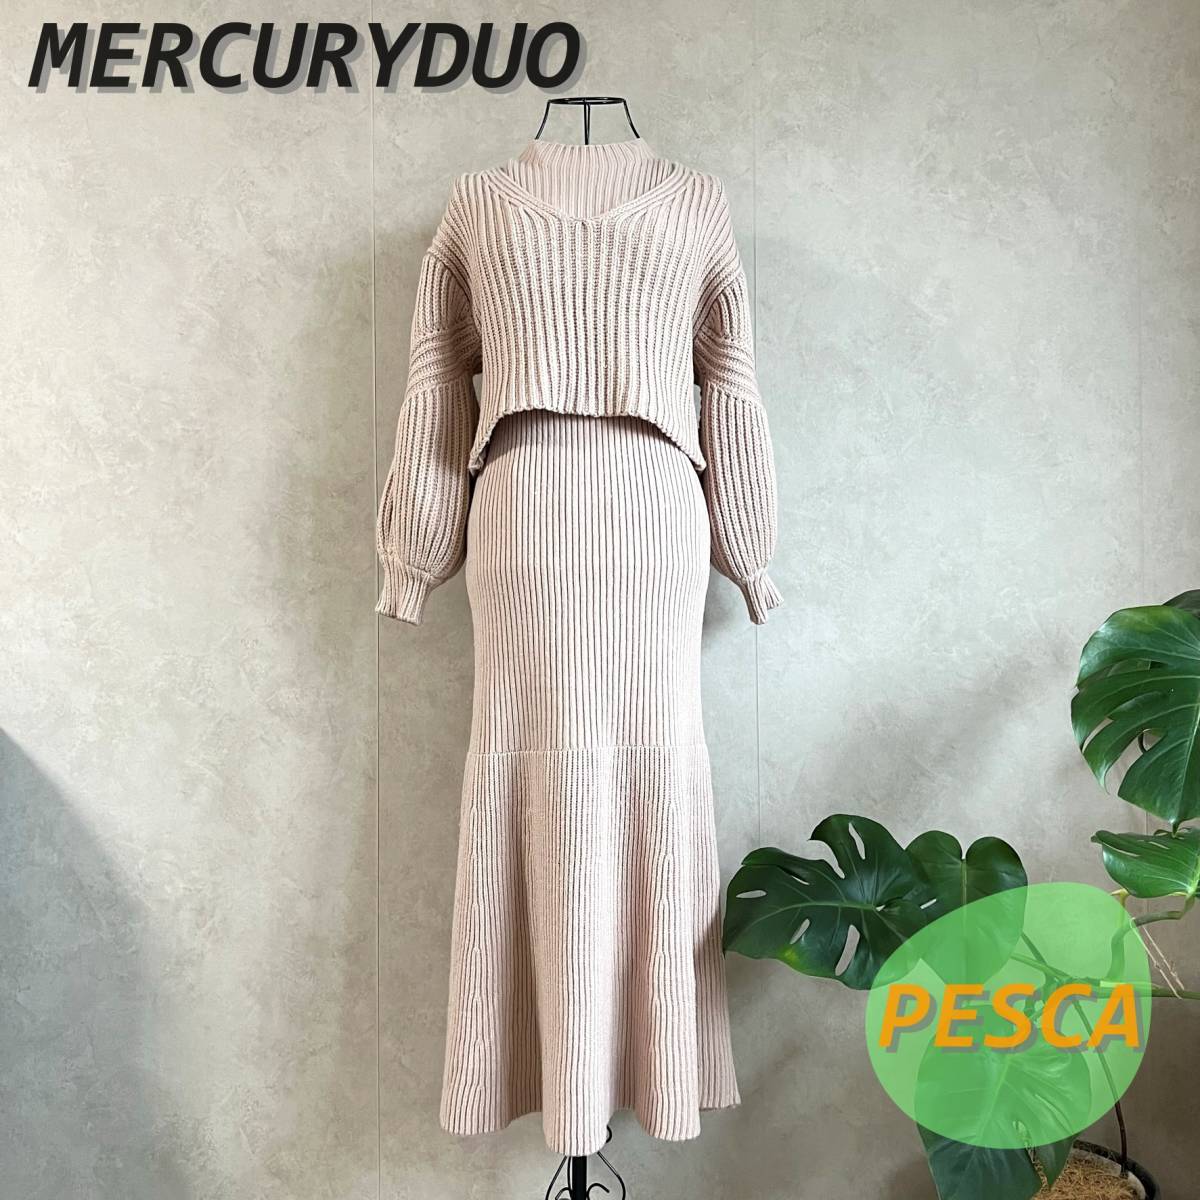 [ прекрасный товар ]MERCURYDUO Mercury Duo задний ti зеленовато-голубой комплект вязаный One-piece свободный размер 002060300201